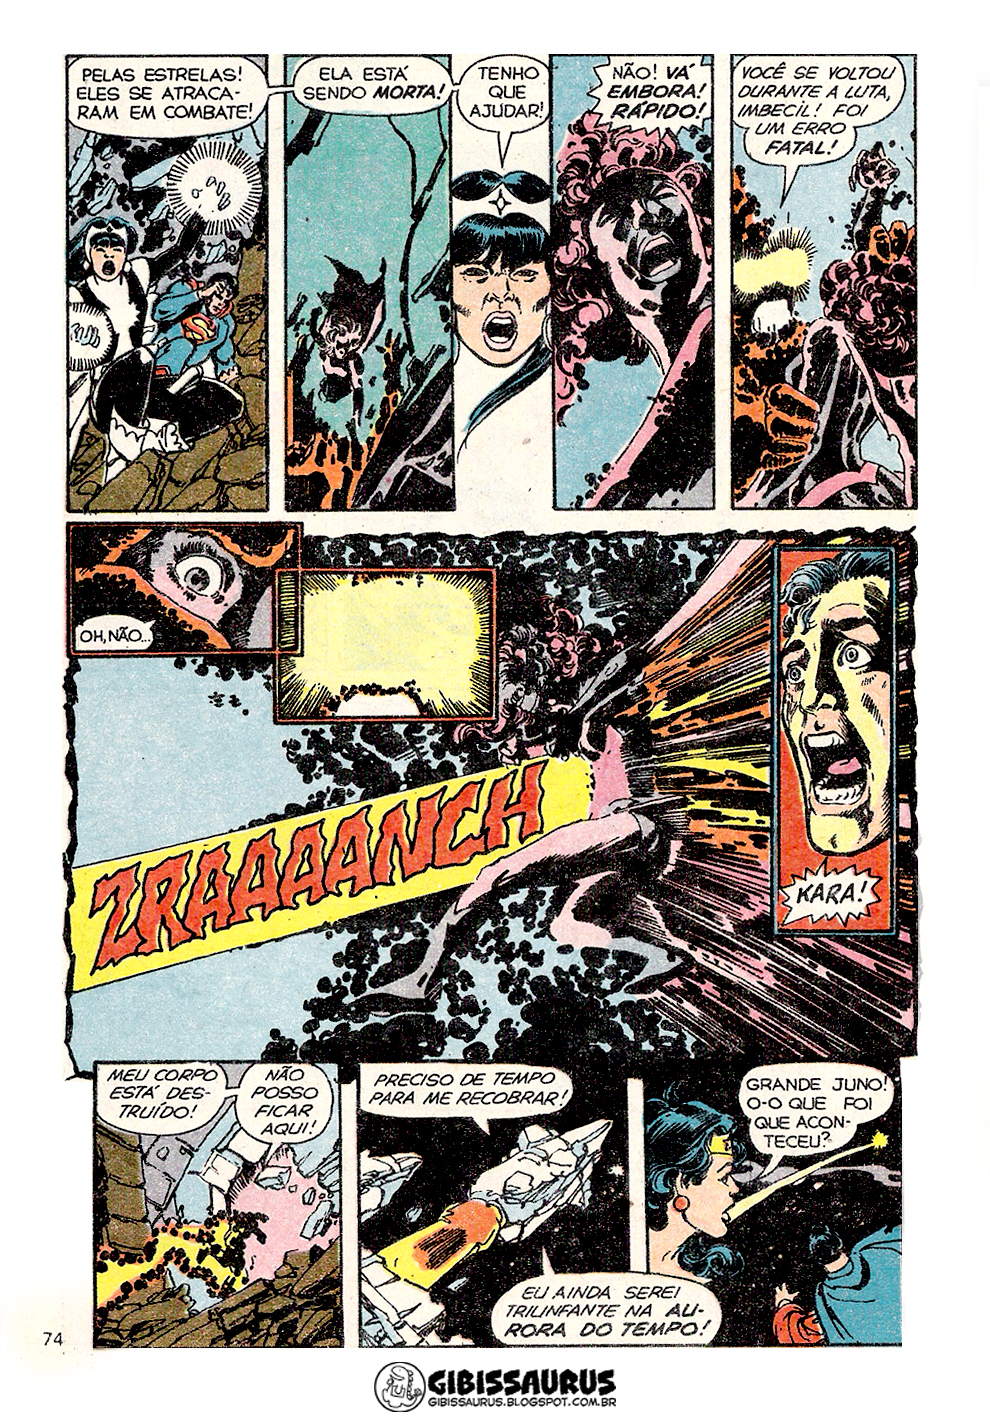 [Tópico de Imagens] OS MELHORES QUADROS DOS QUADRINHOS!  - Página 3 Morte-supergirl-2